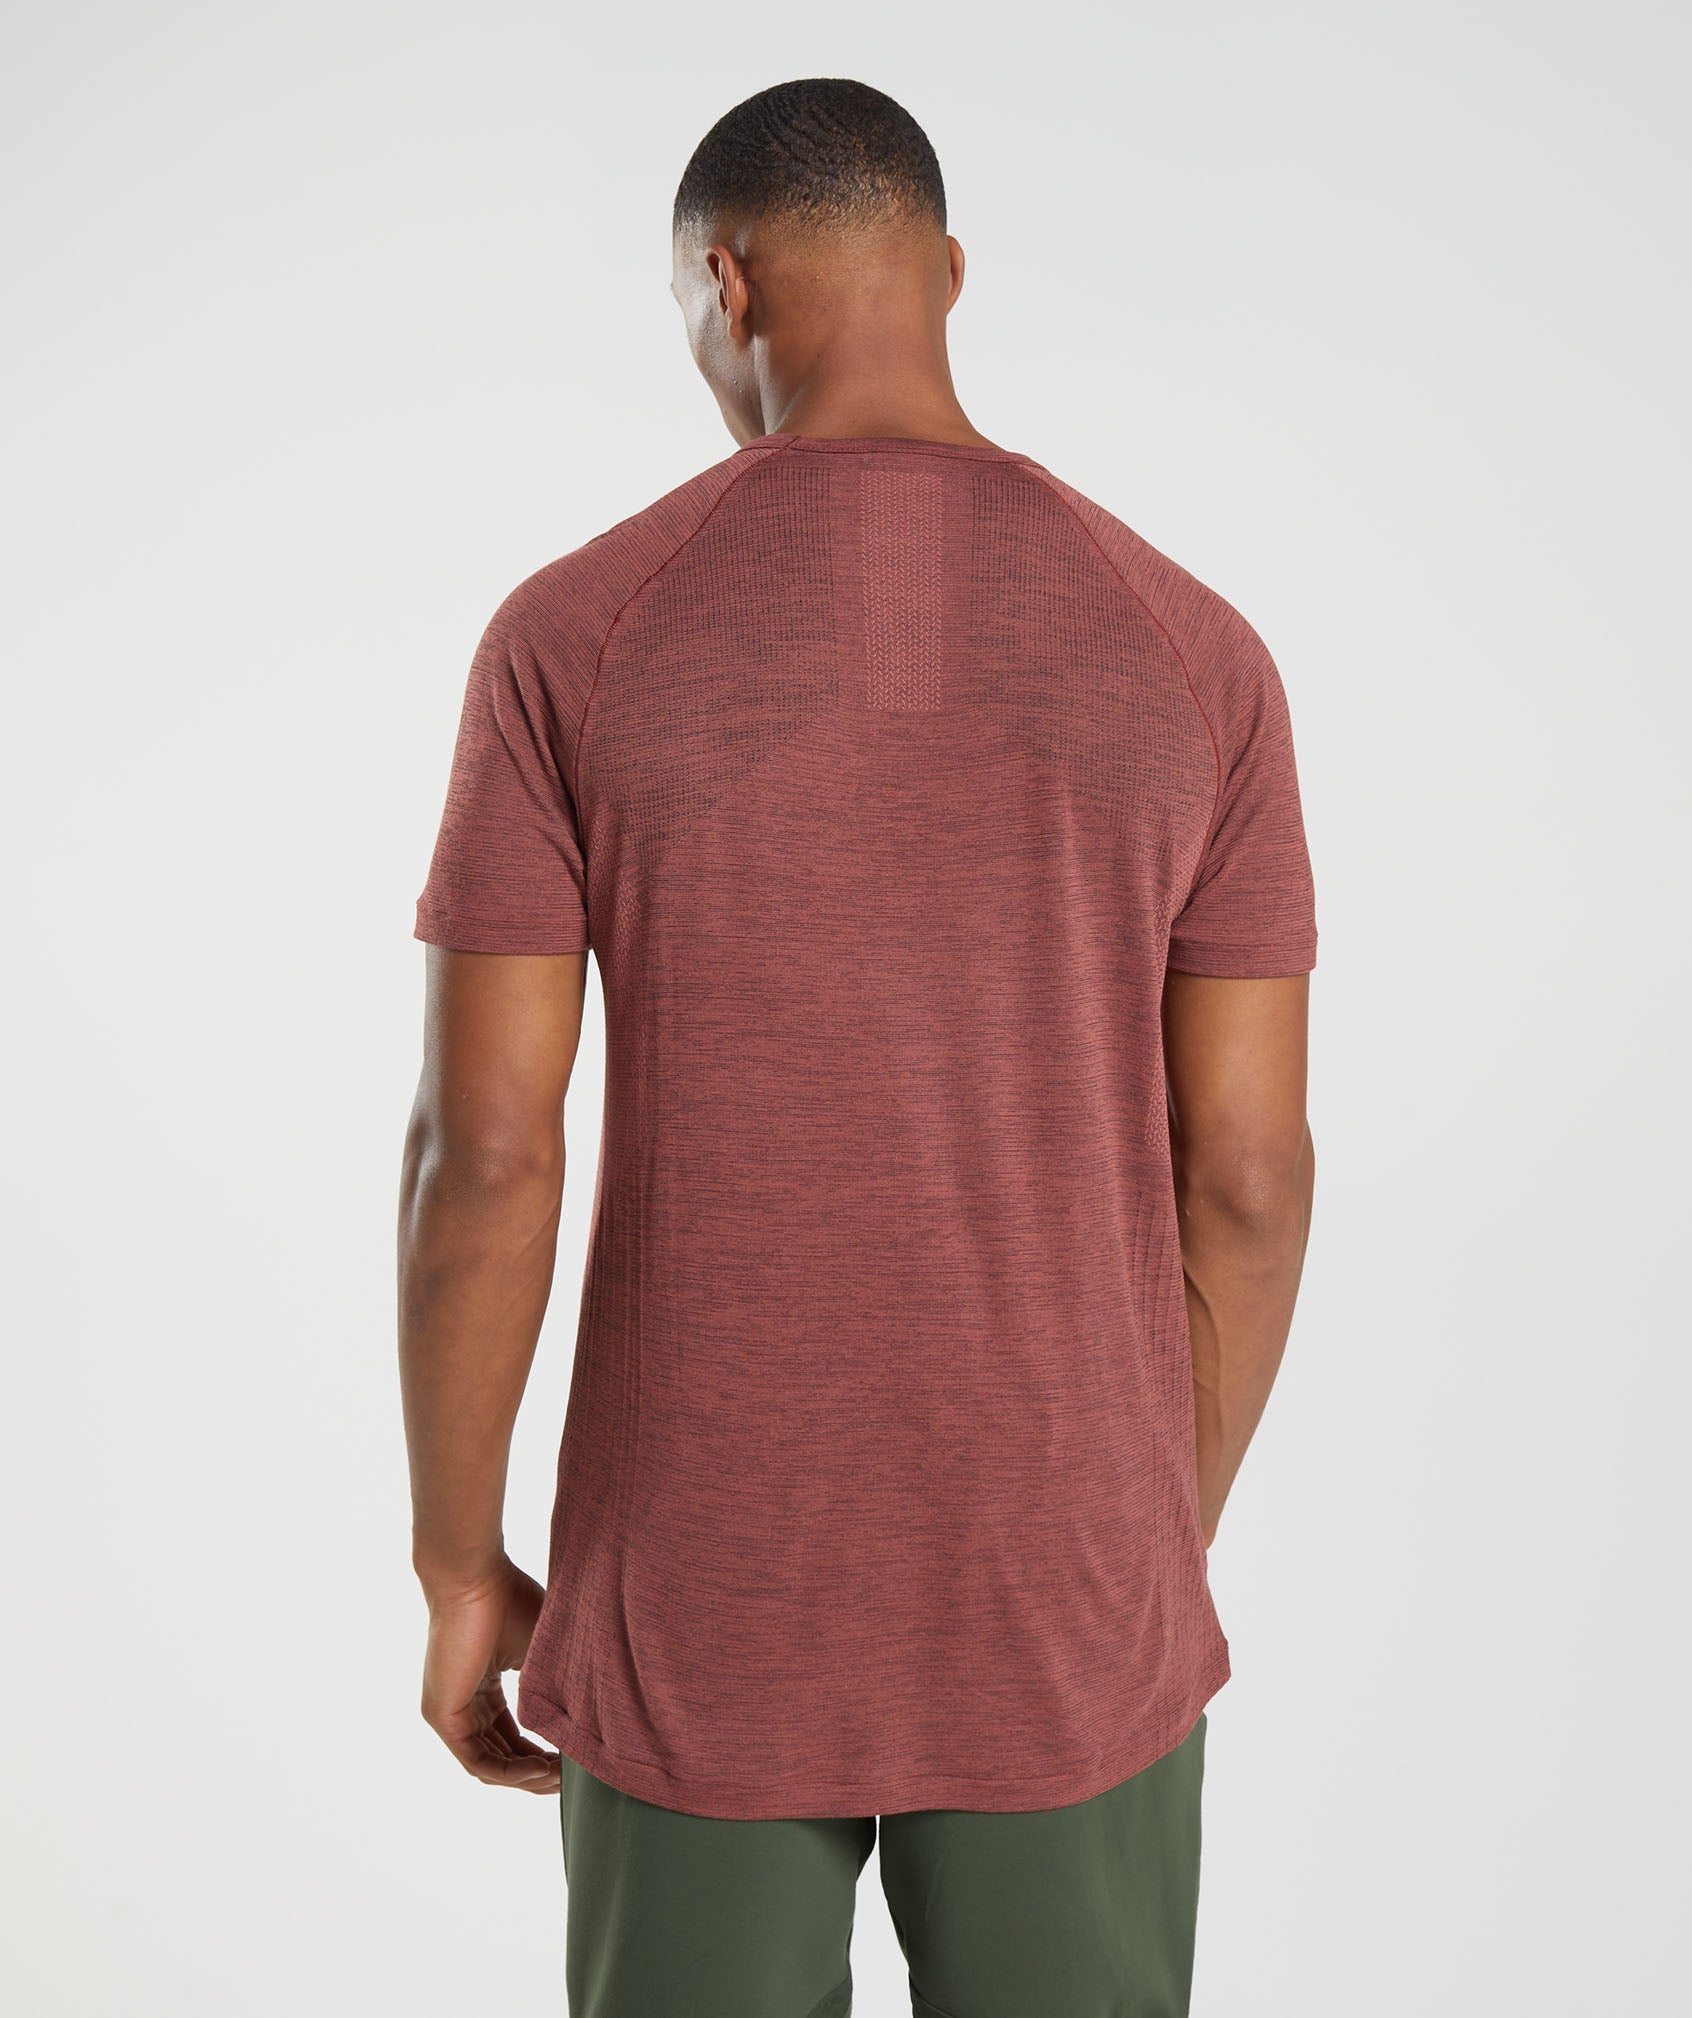 Retake Seamless T-Shirt in Rose Brown/Black Marl